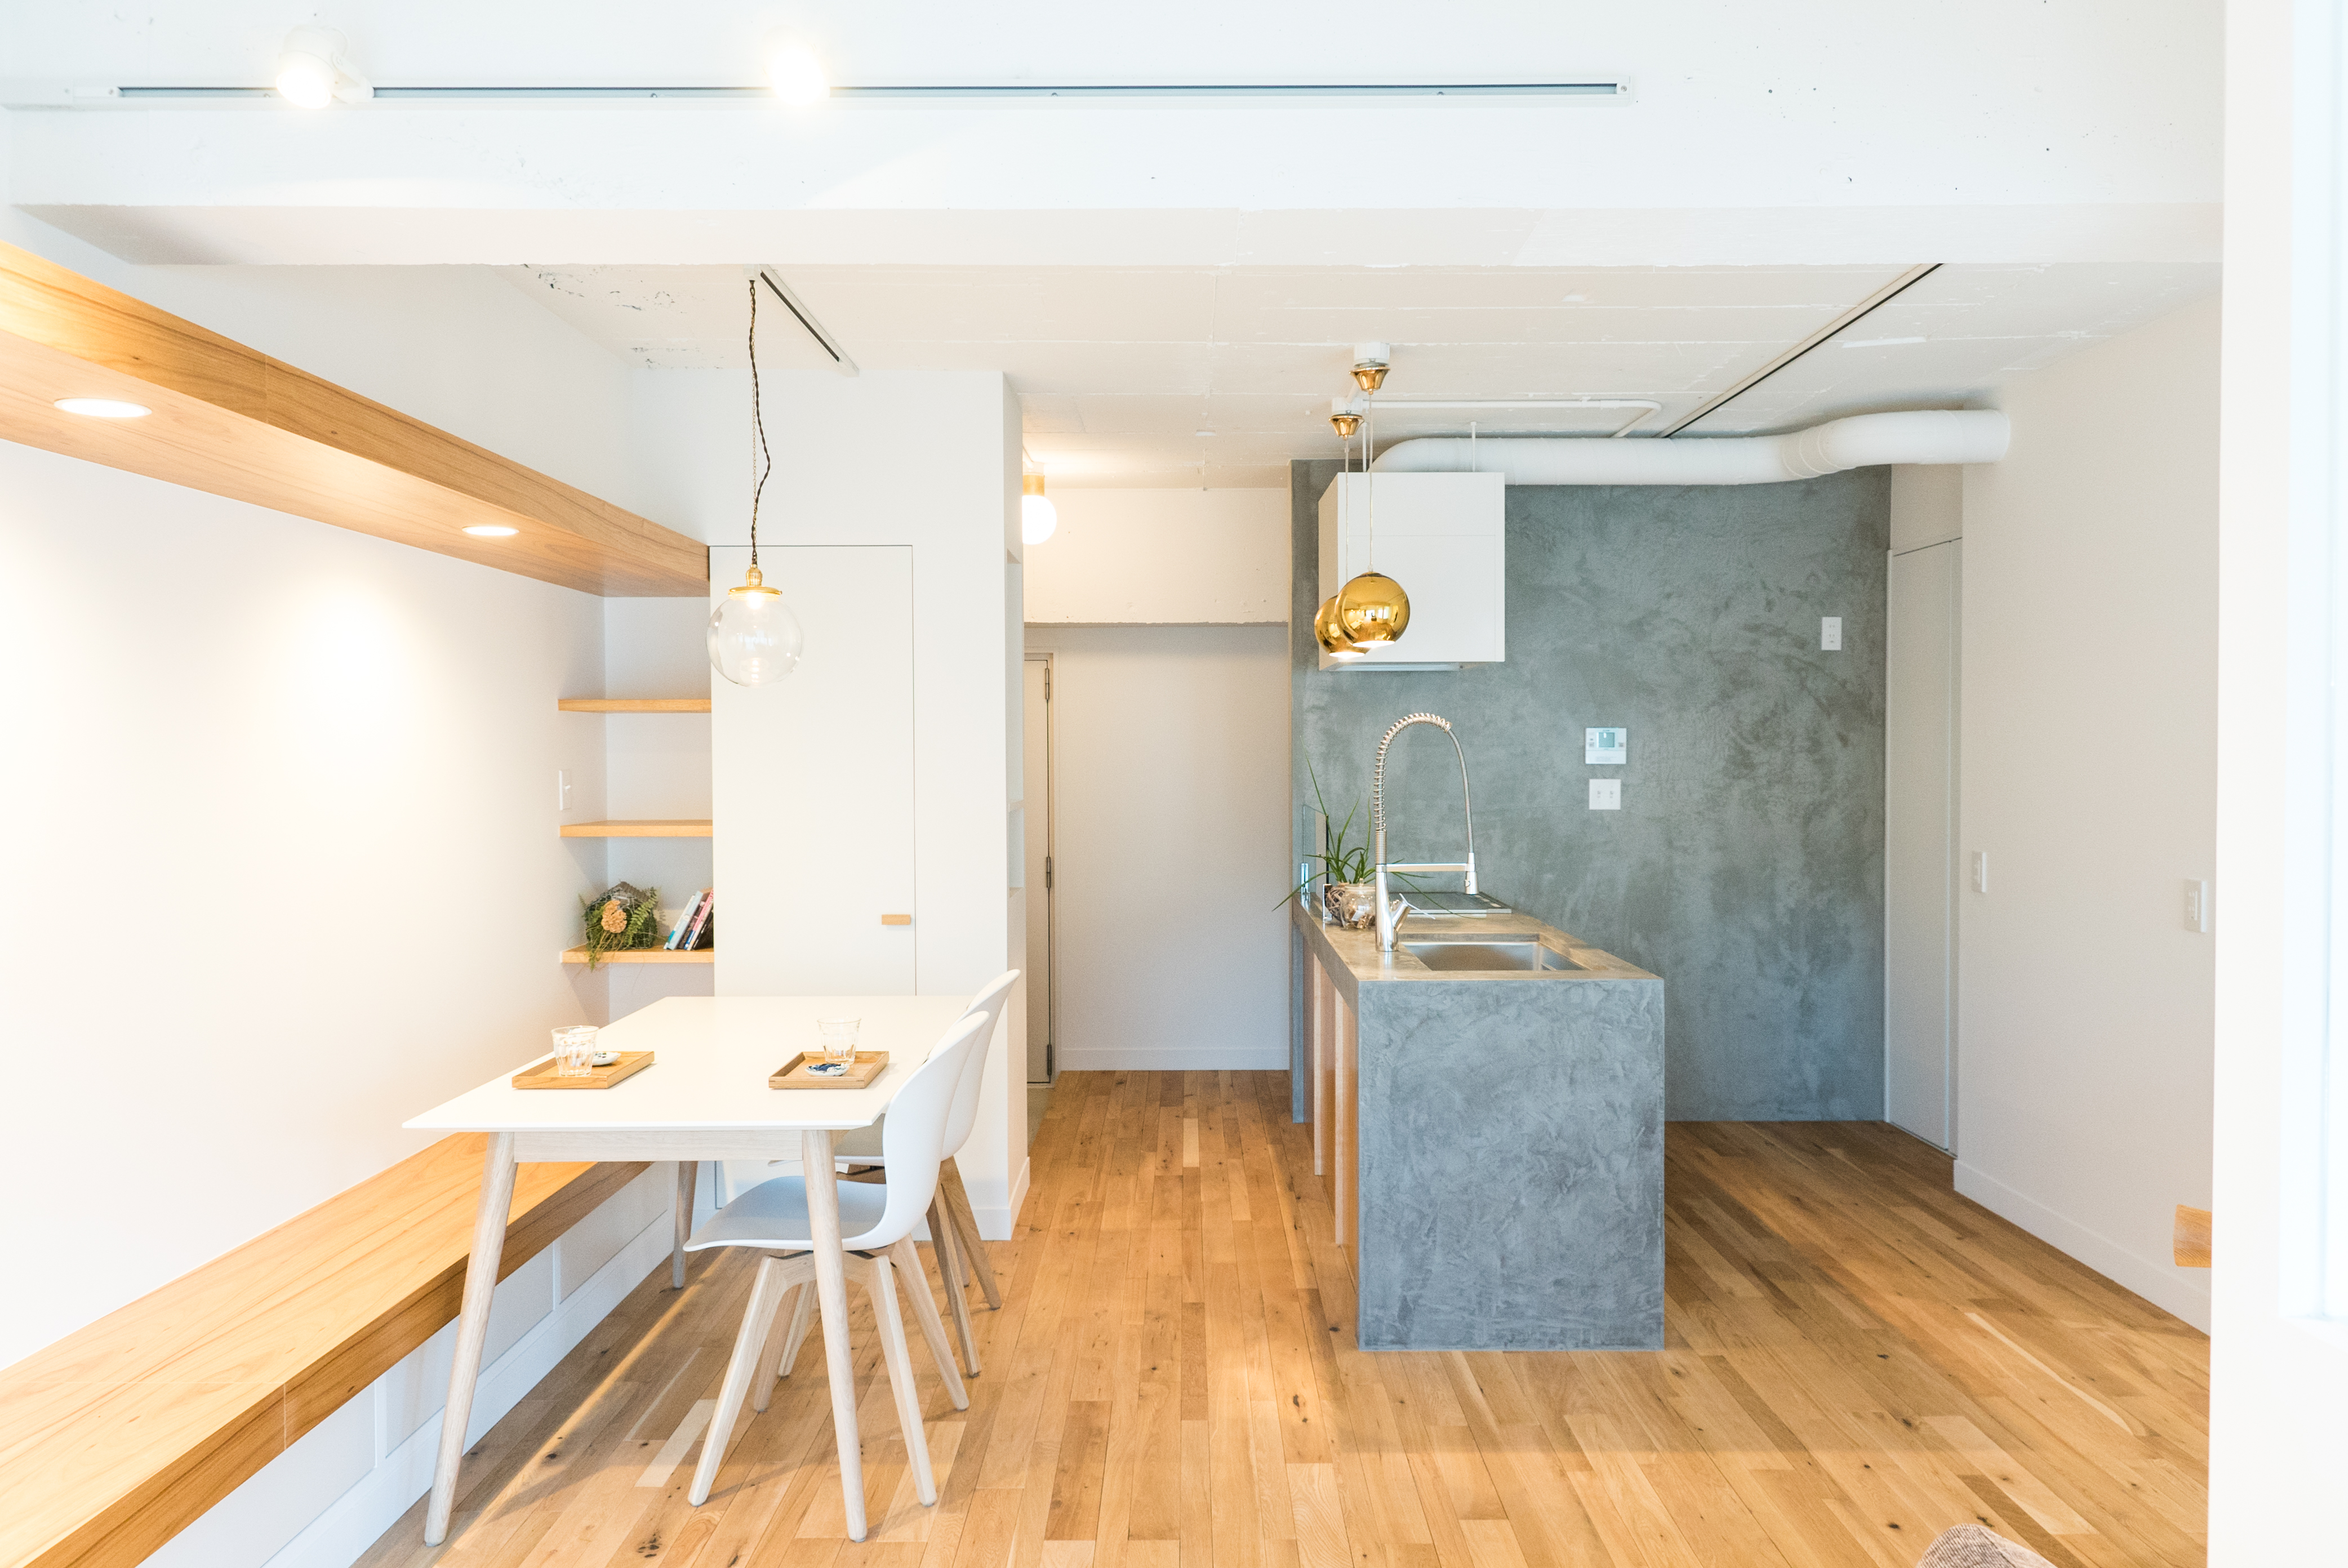 理想のダイニングキッチンレイアウトをつくる 東京 千葉のおしゃれリノベ実例 リノベーションのshuken Re マンション 住宅 中古物件をリフォームやリノベで住みやすくデザインし施工します